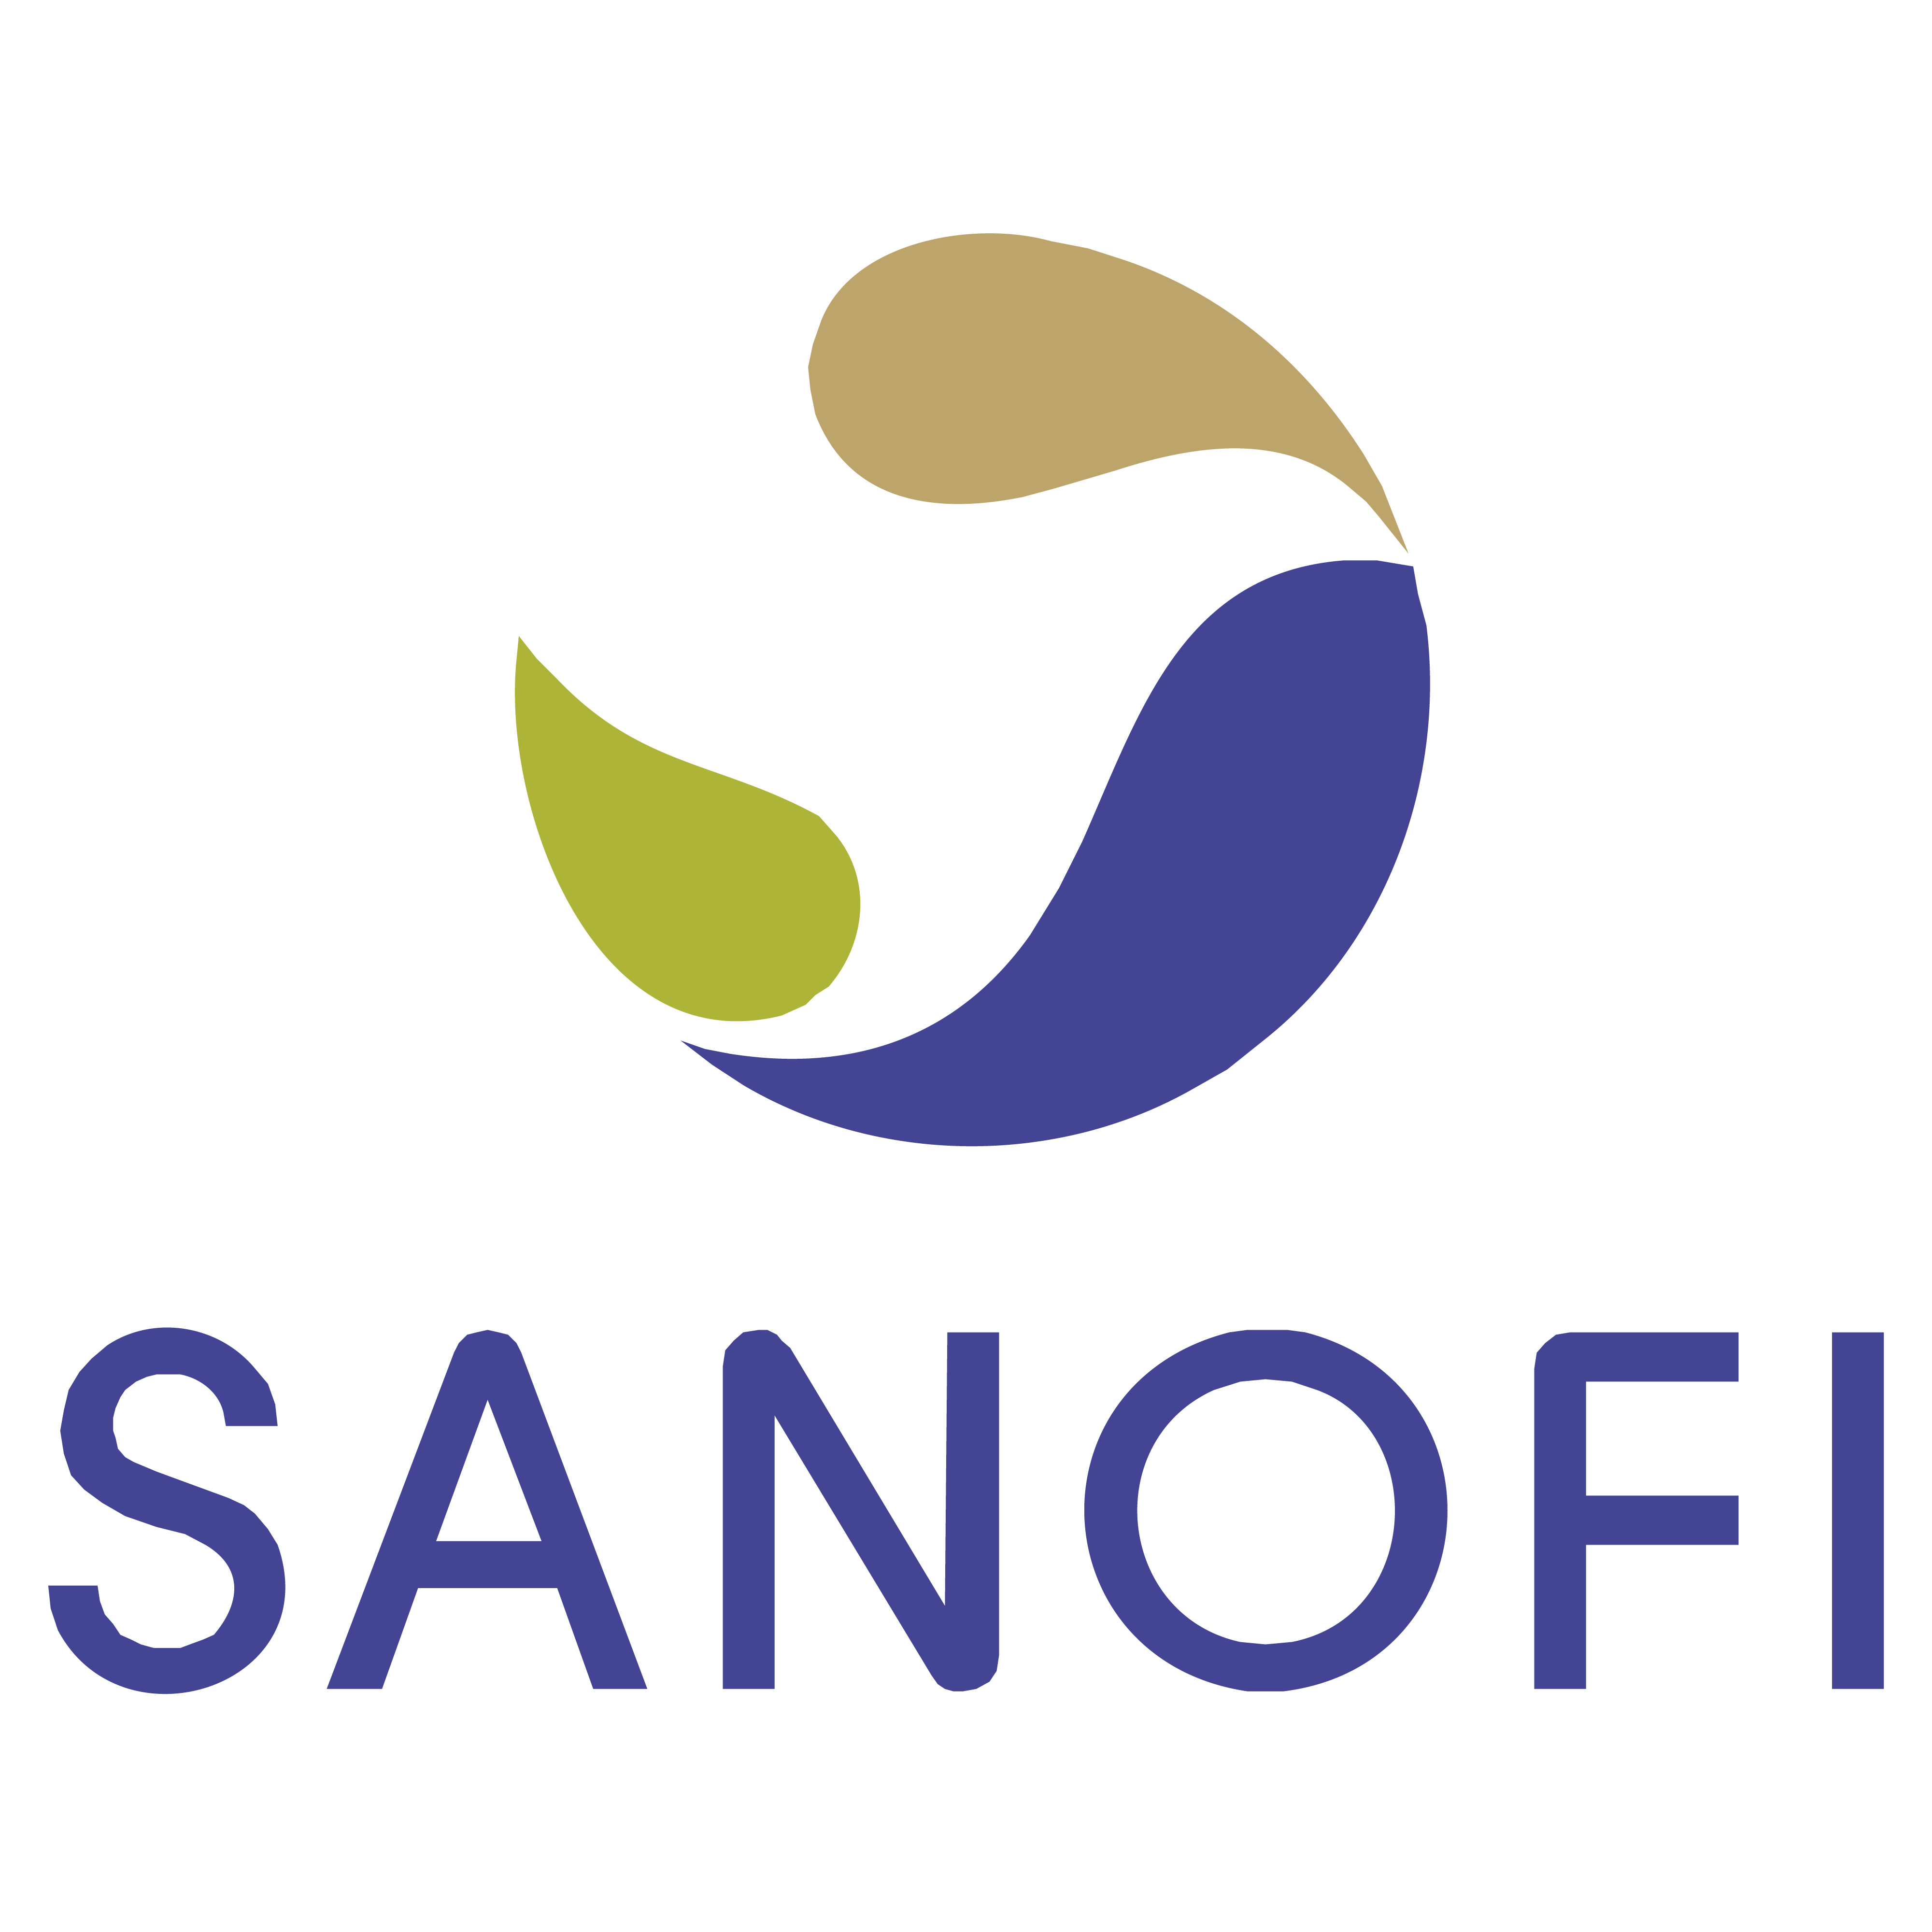 SANOFI_Logo